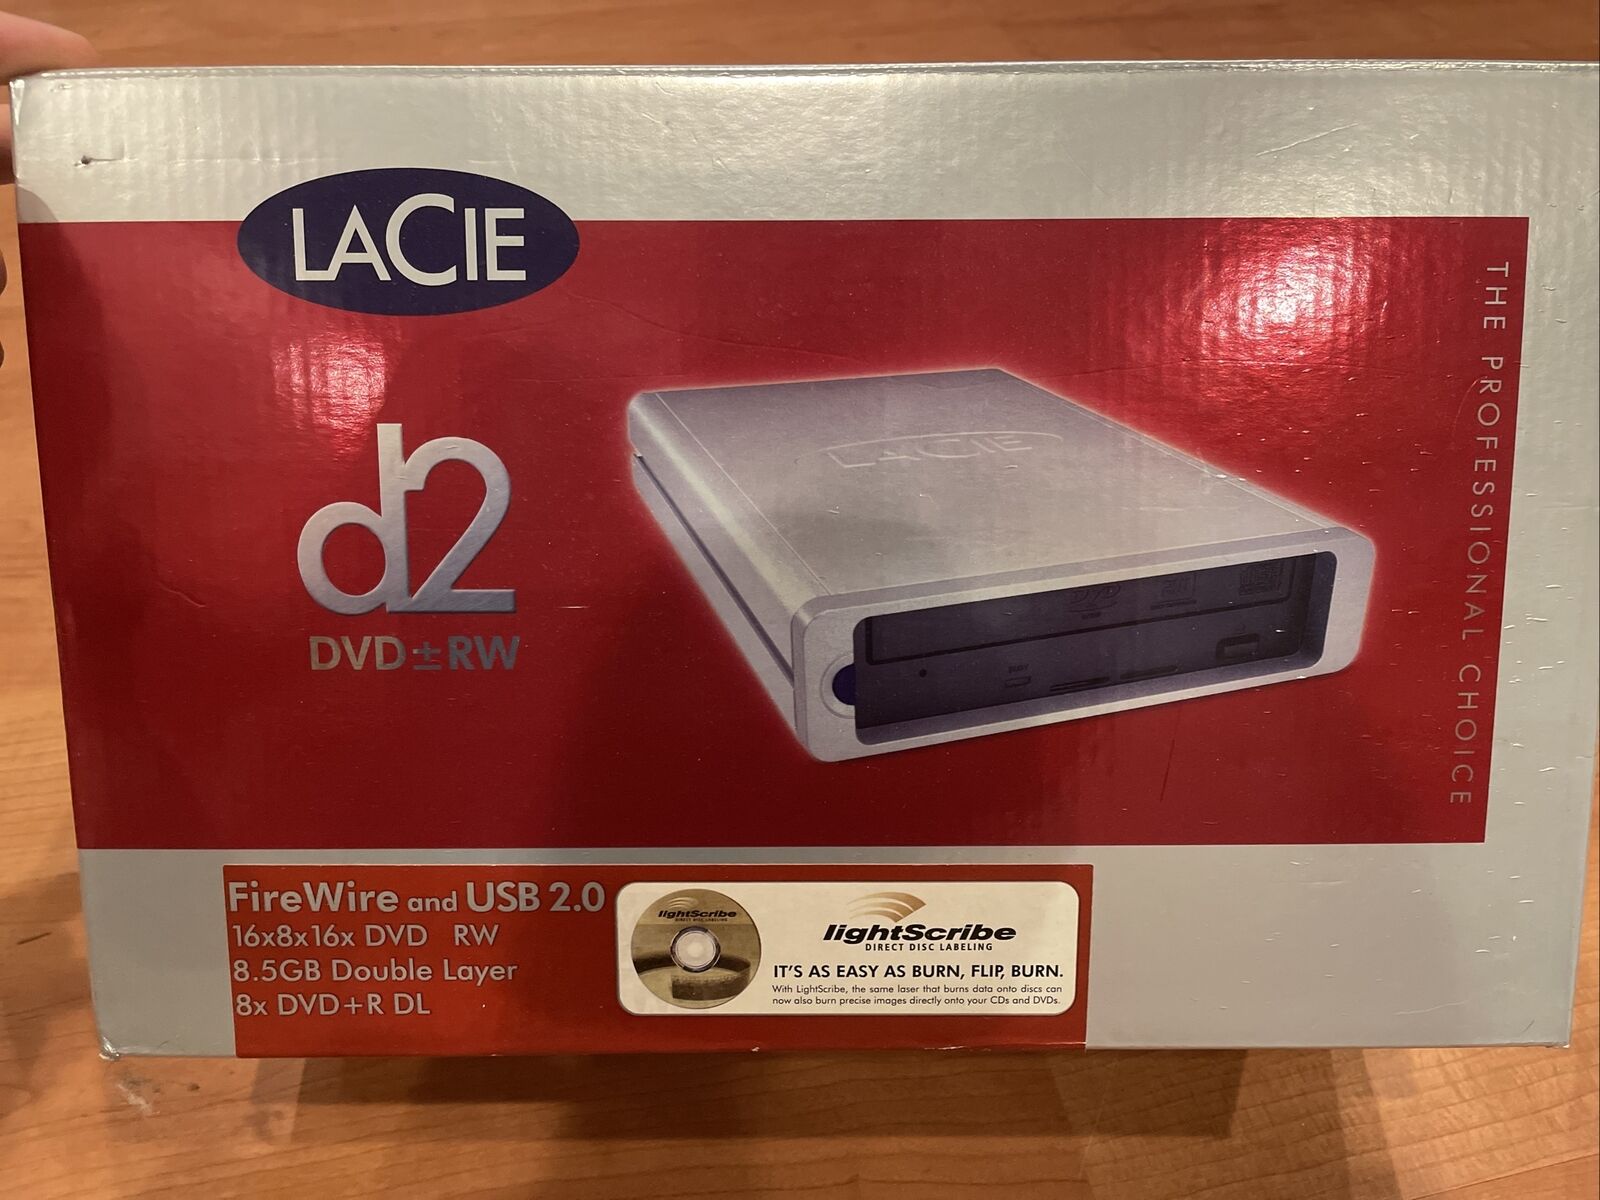 Lacie - D2 DVD+RW Double Layer External w/Lightscribe- USB Firewire 16X 8X 16X 